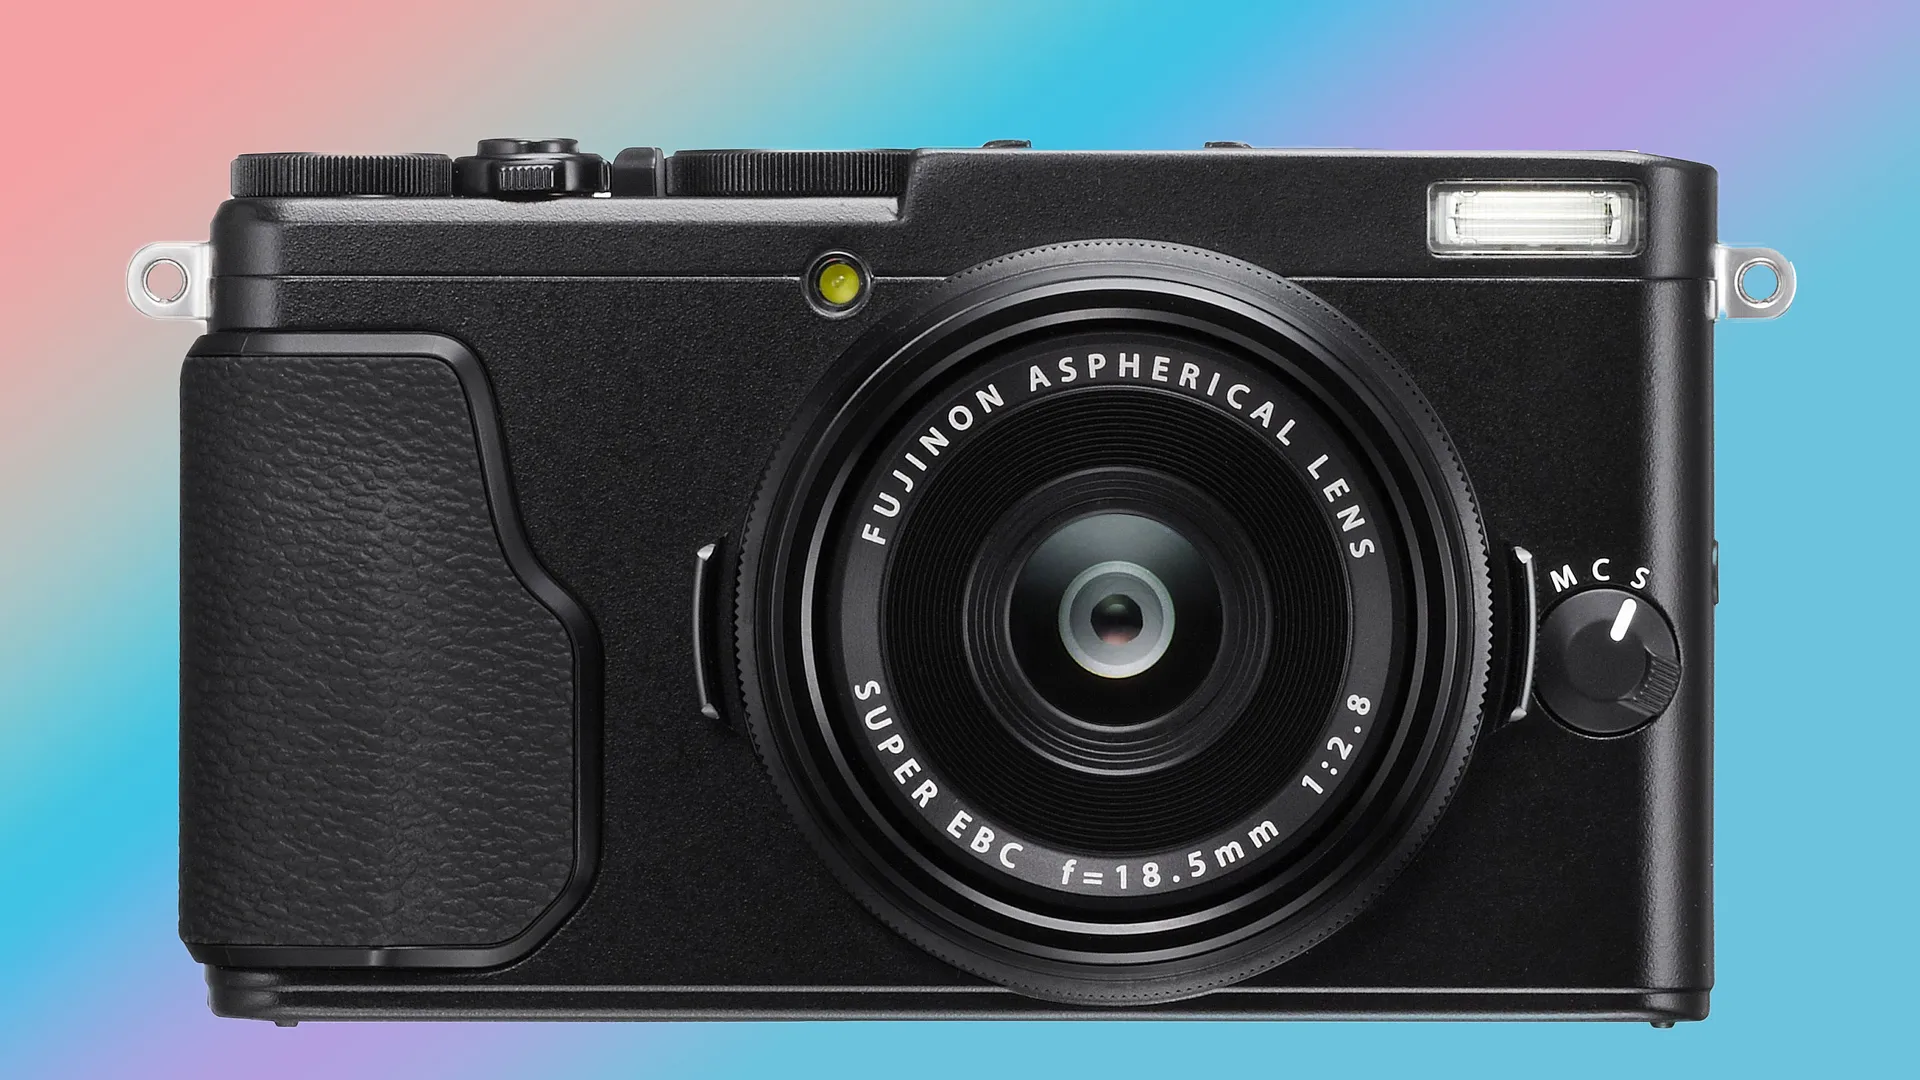 Fujifilm s'apprête à lancer une petite caméra numérique ce mois-ci, selon des rumeurs